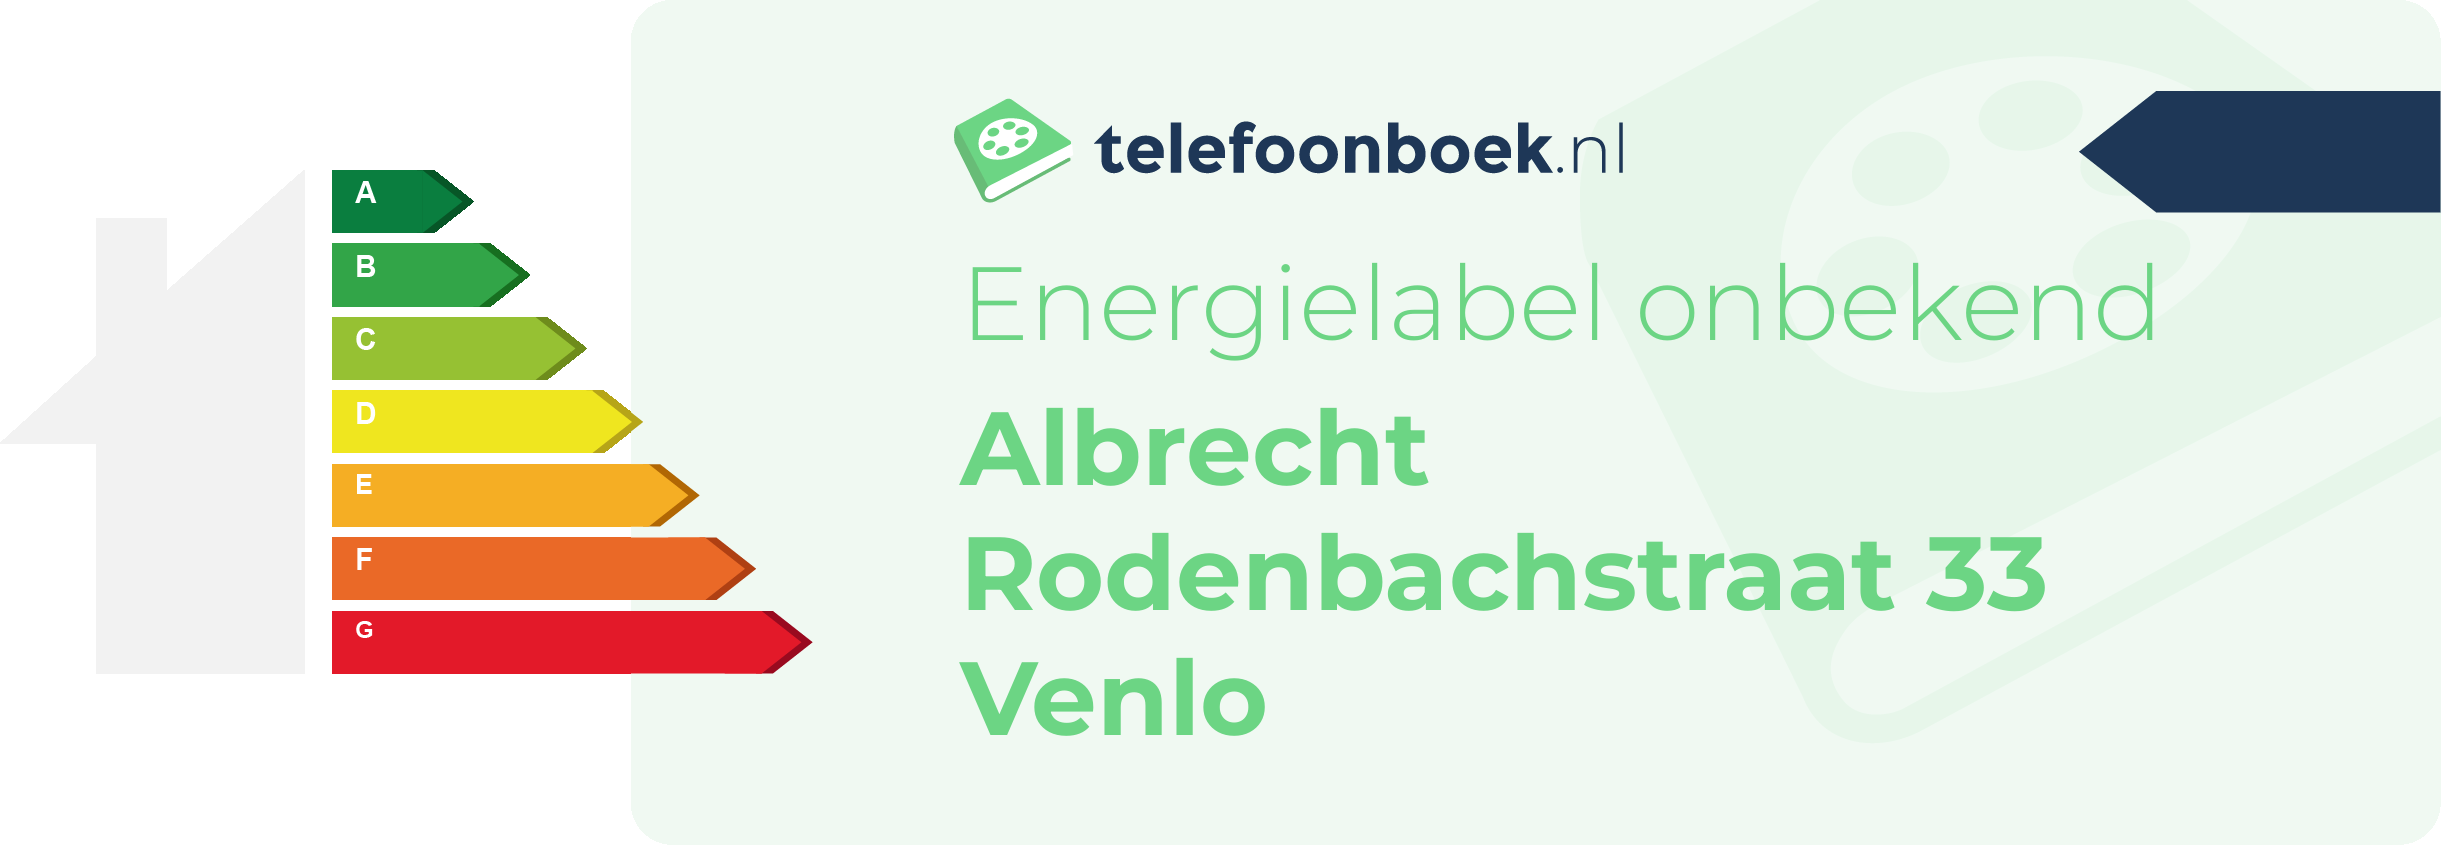 Energielabel Albrecht Rodenbachstraat 33 Venlo